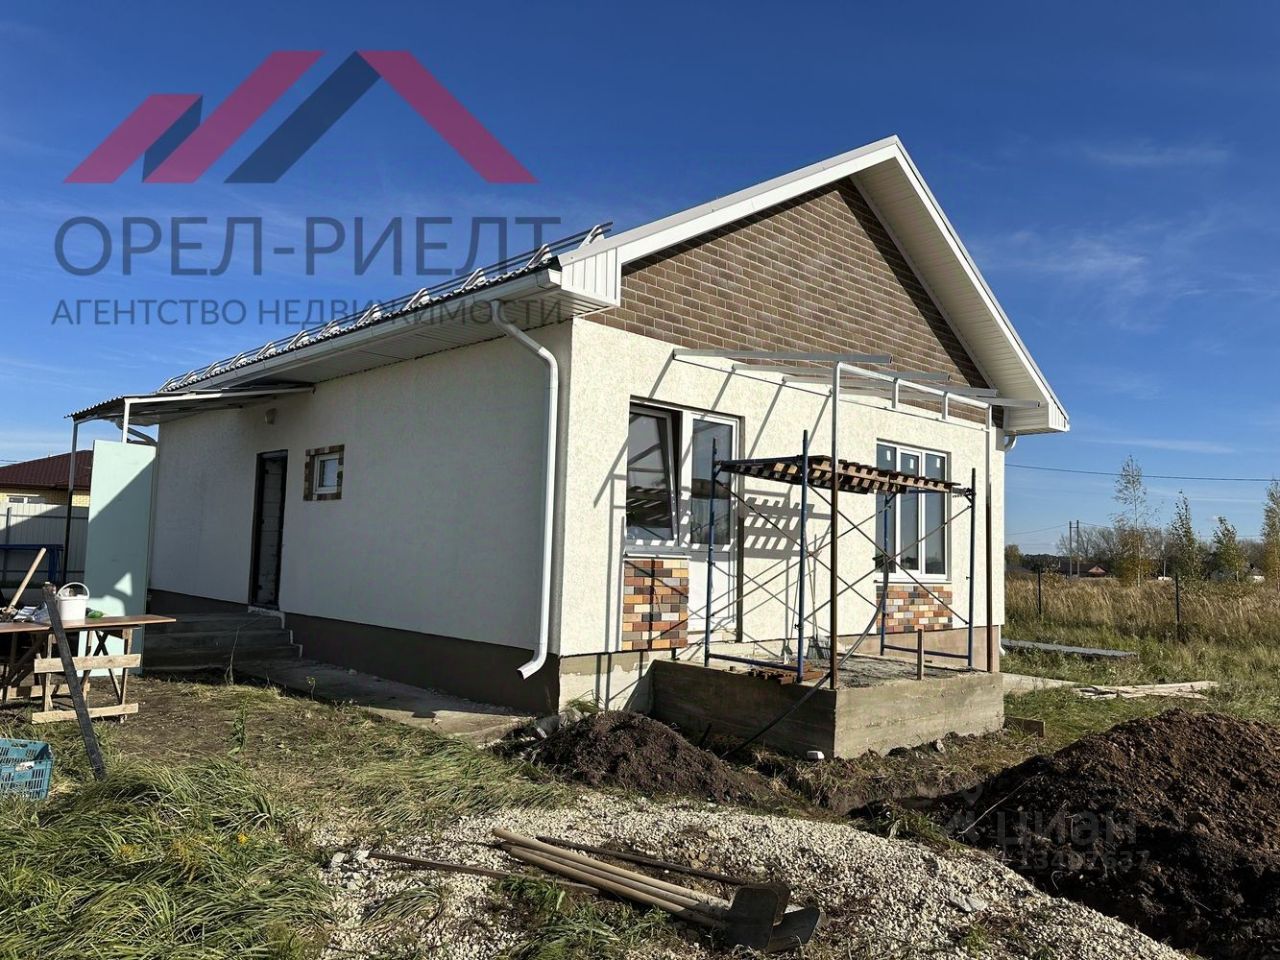 Купить дом в деревне в Орловской области для ПМЖ, продажа недорогих  коттеджей с пропиской в Орловской области. Найдено 45 объявлений.